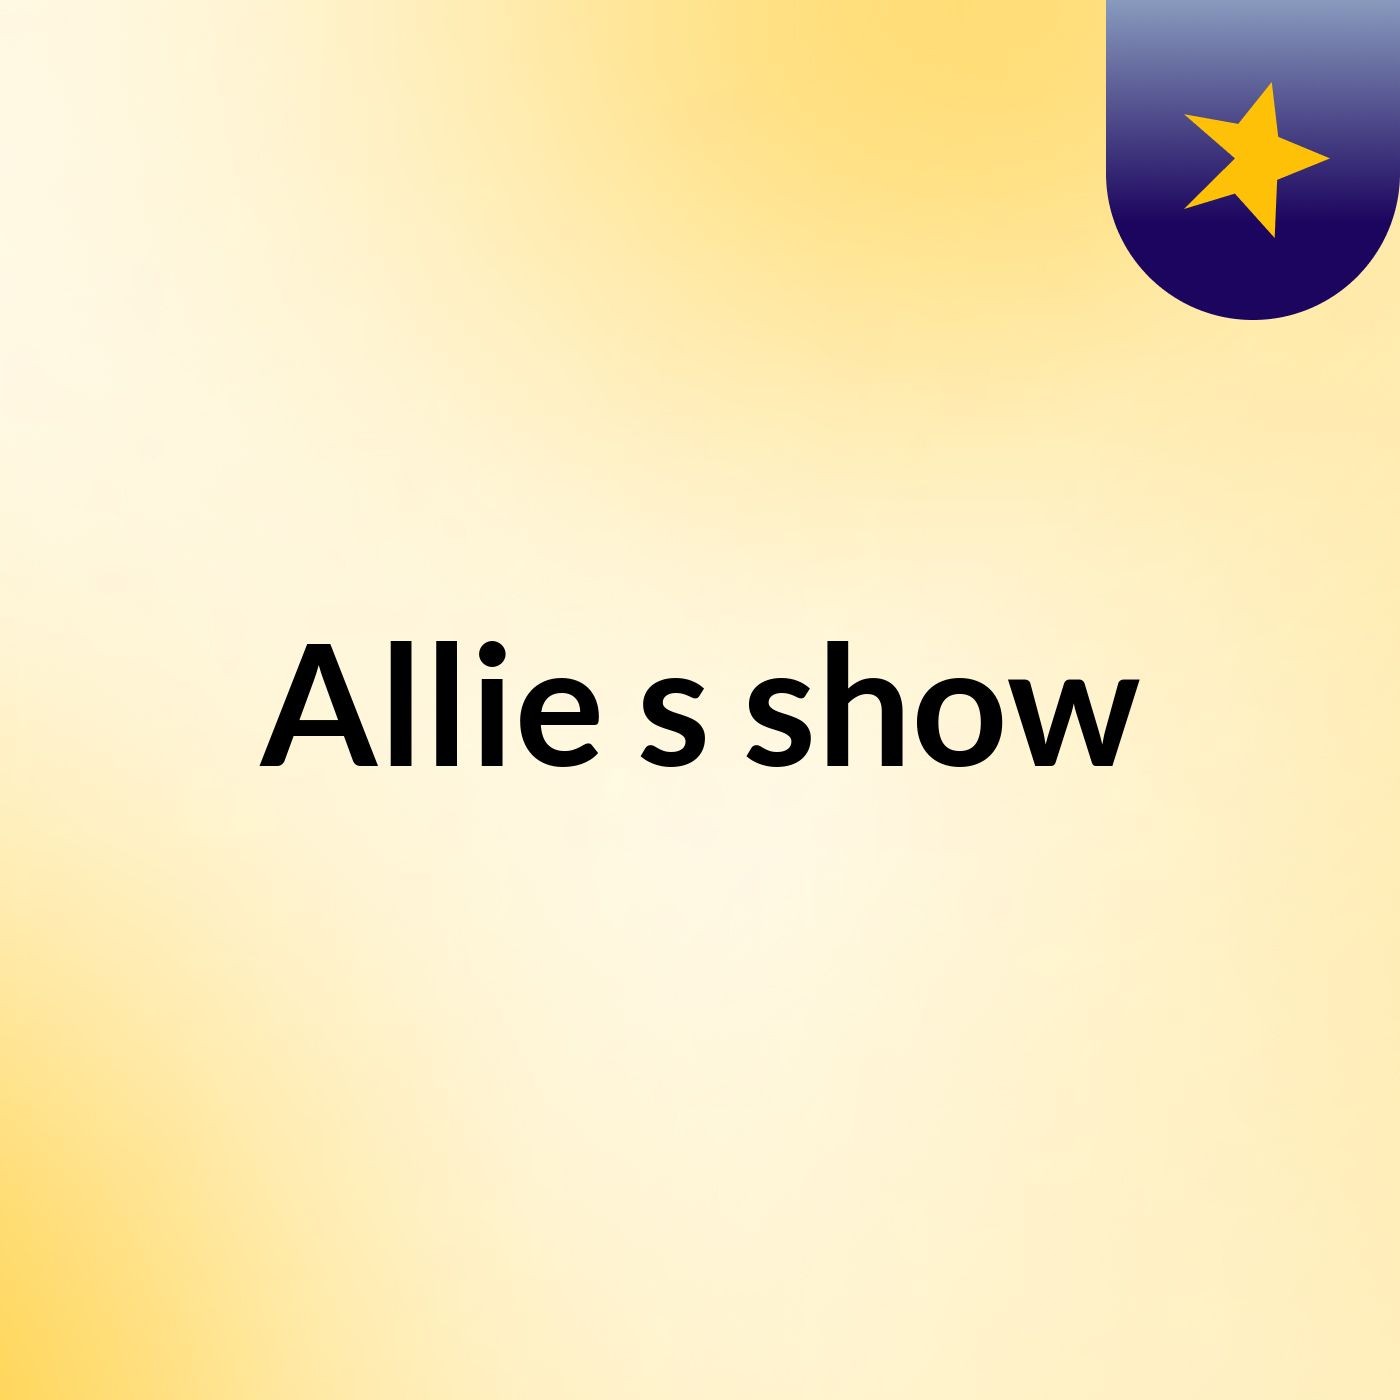 Allie's show